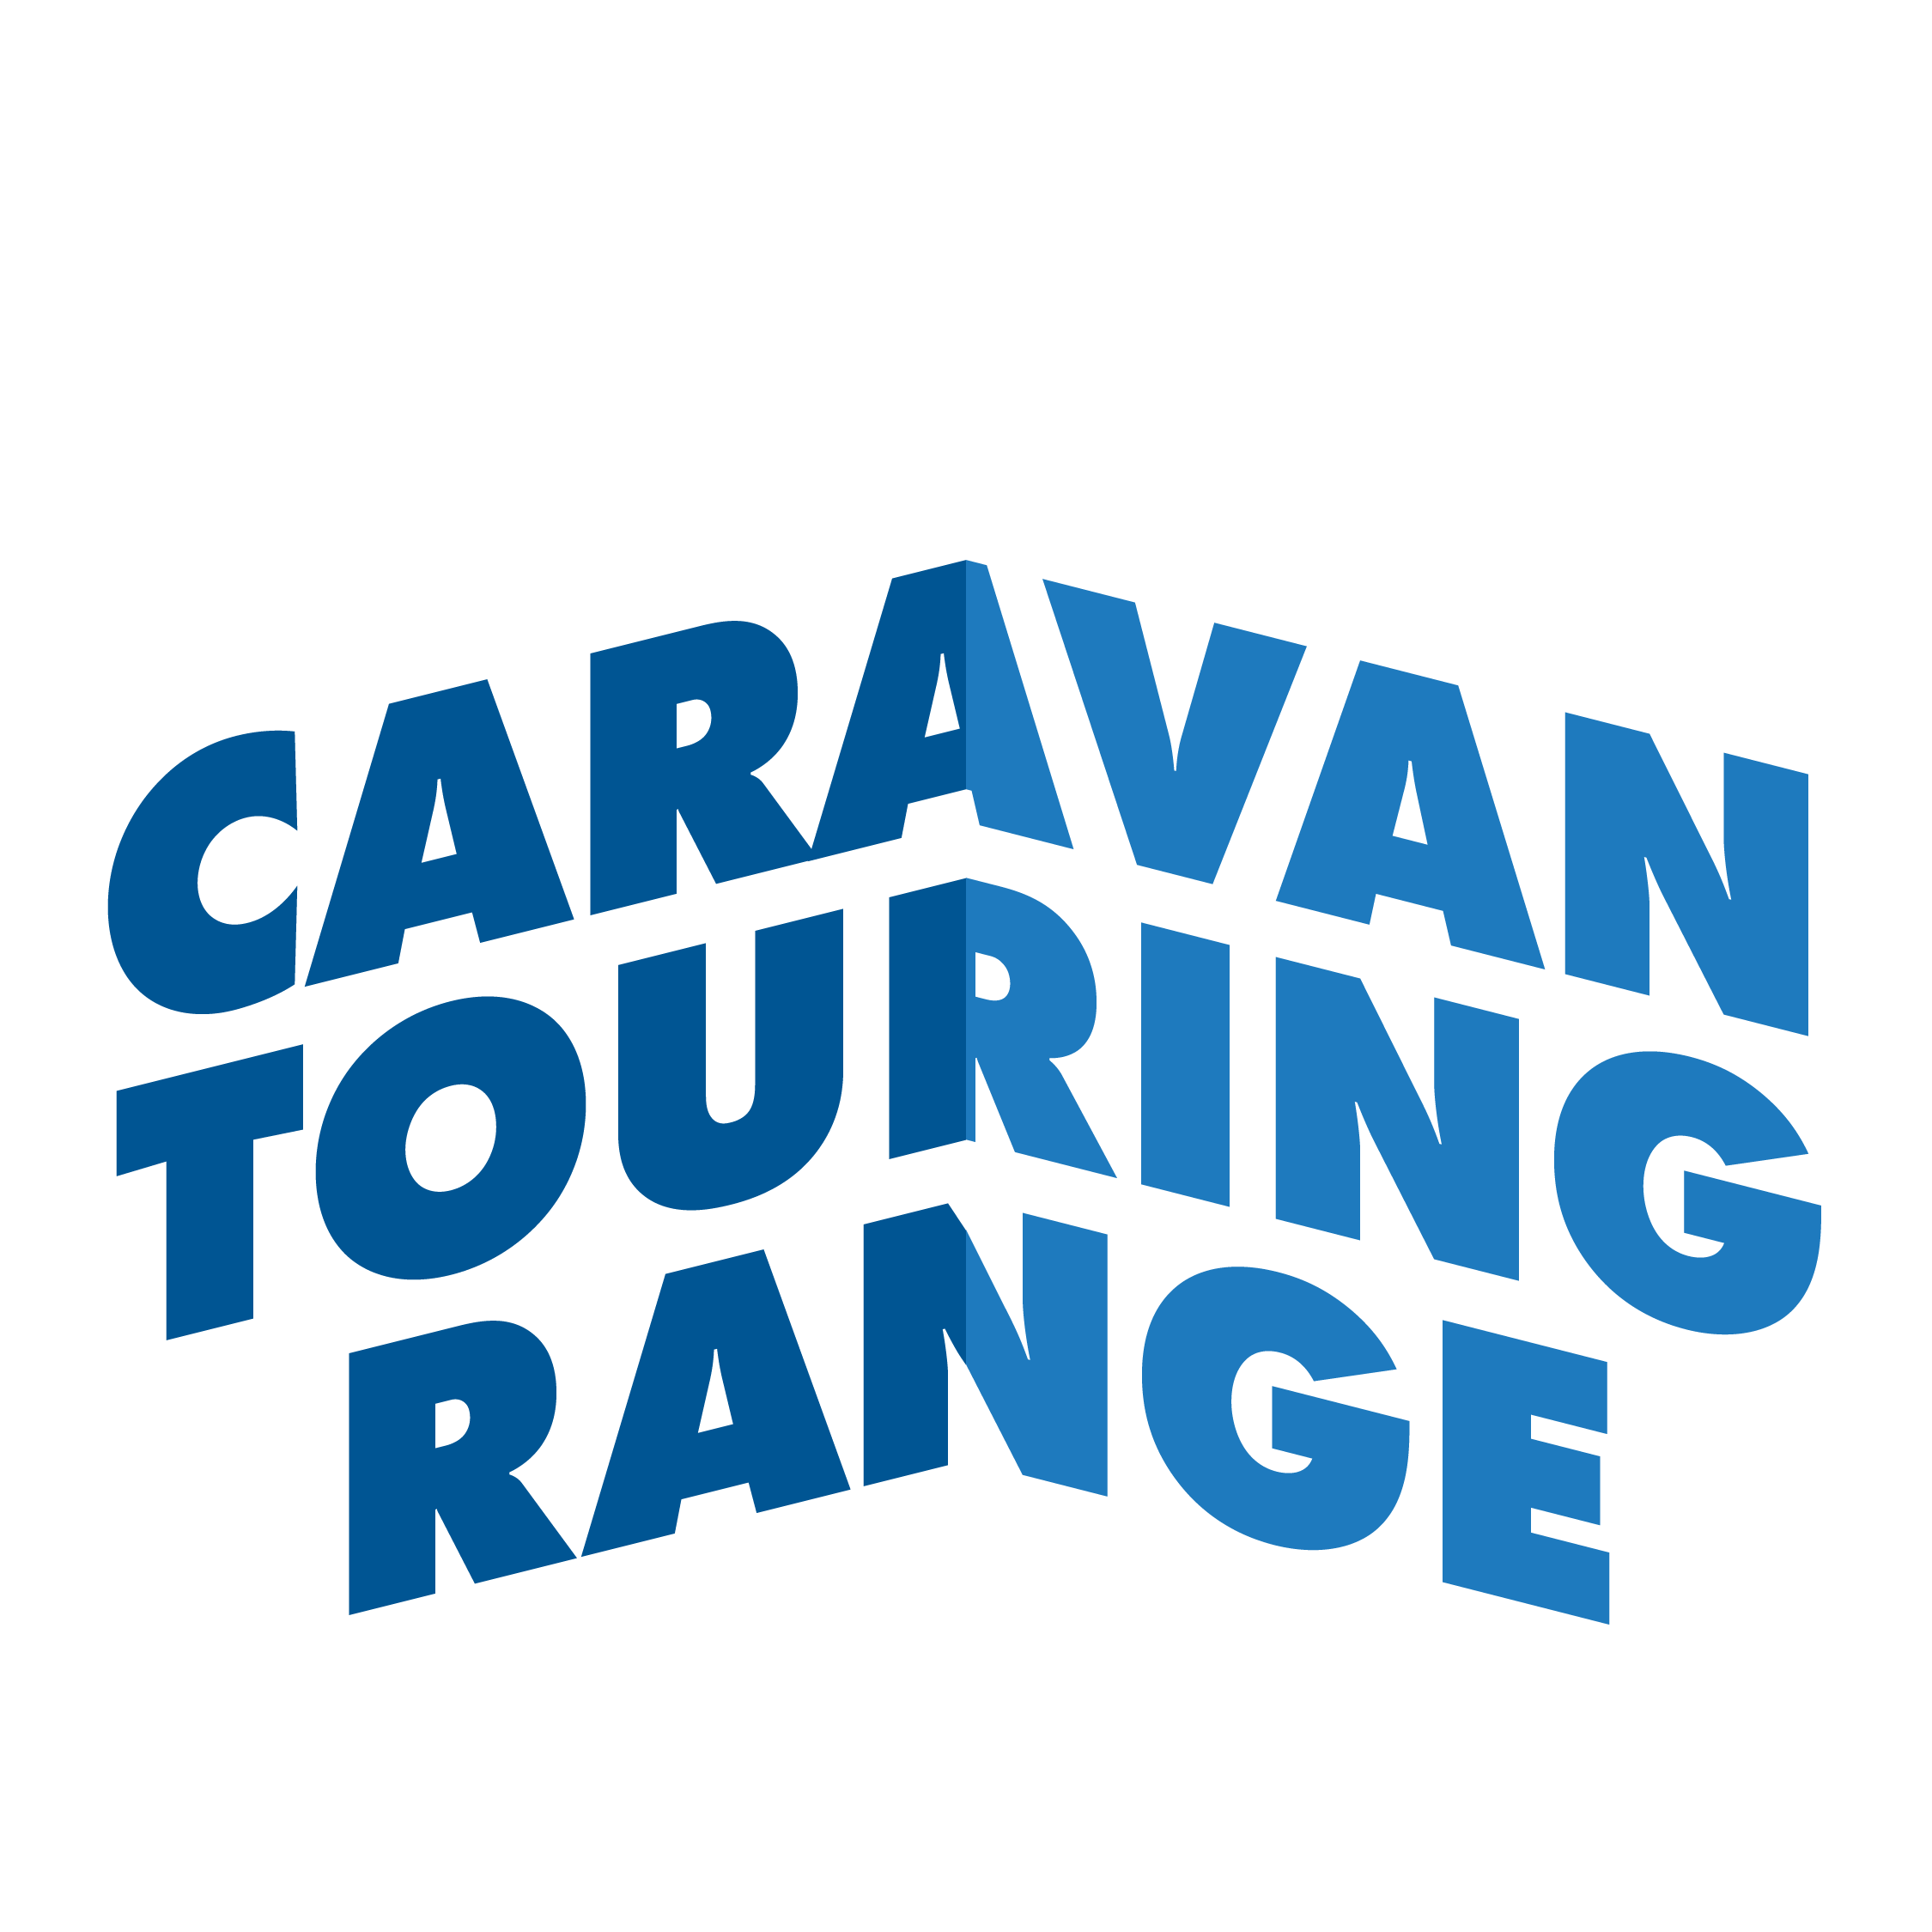 Caravan Touring Range